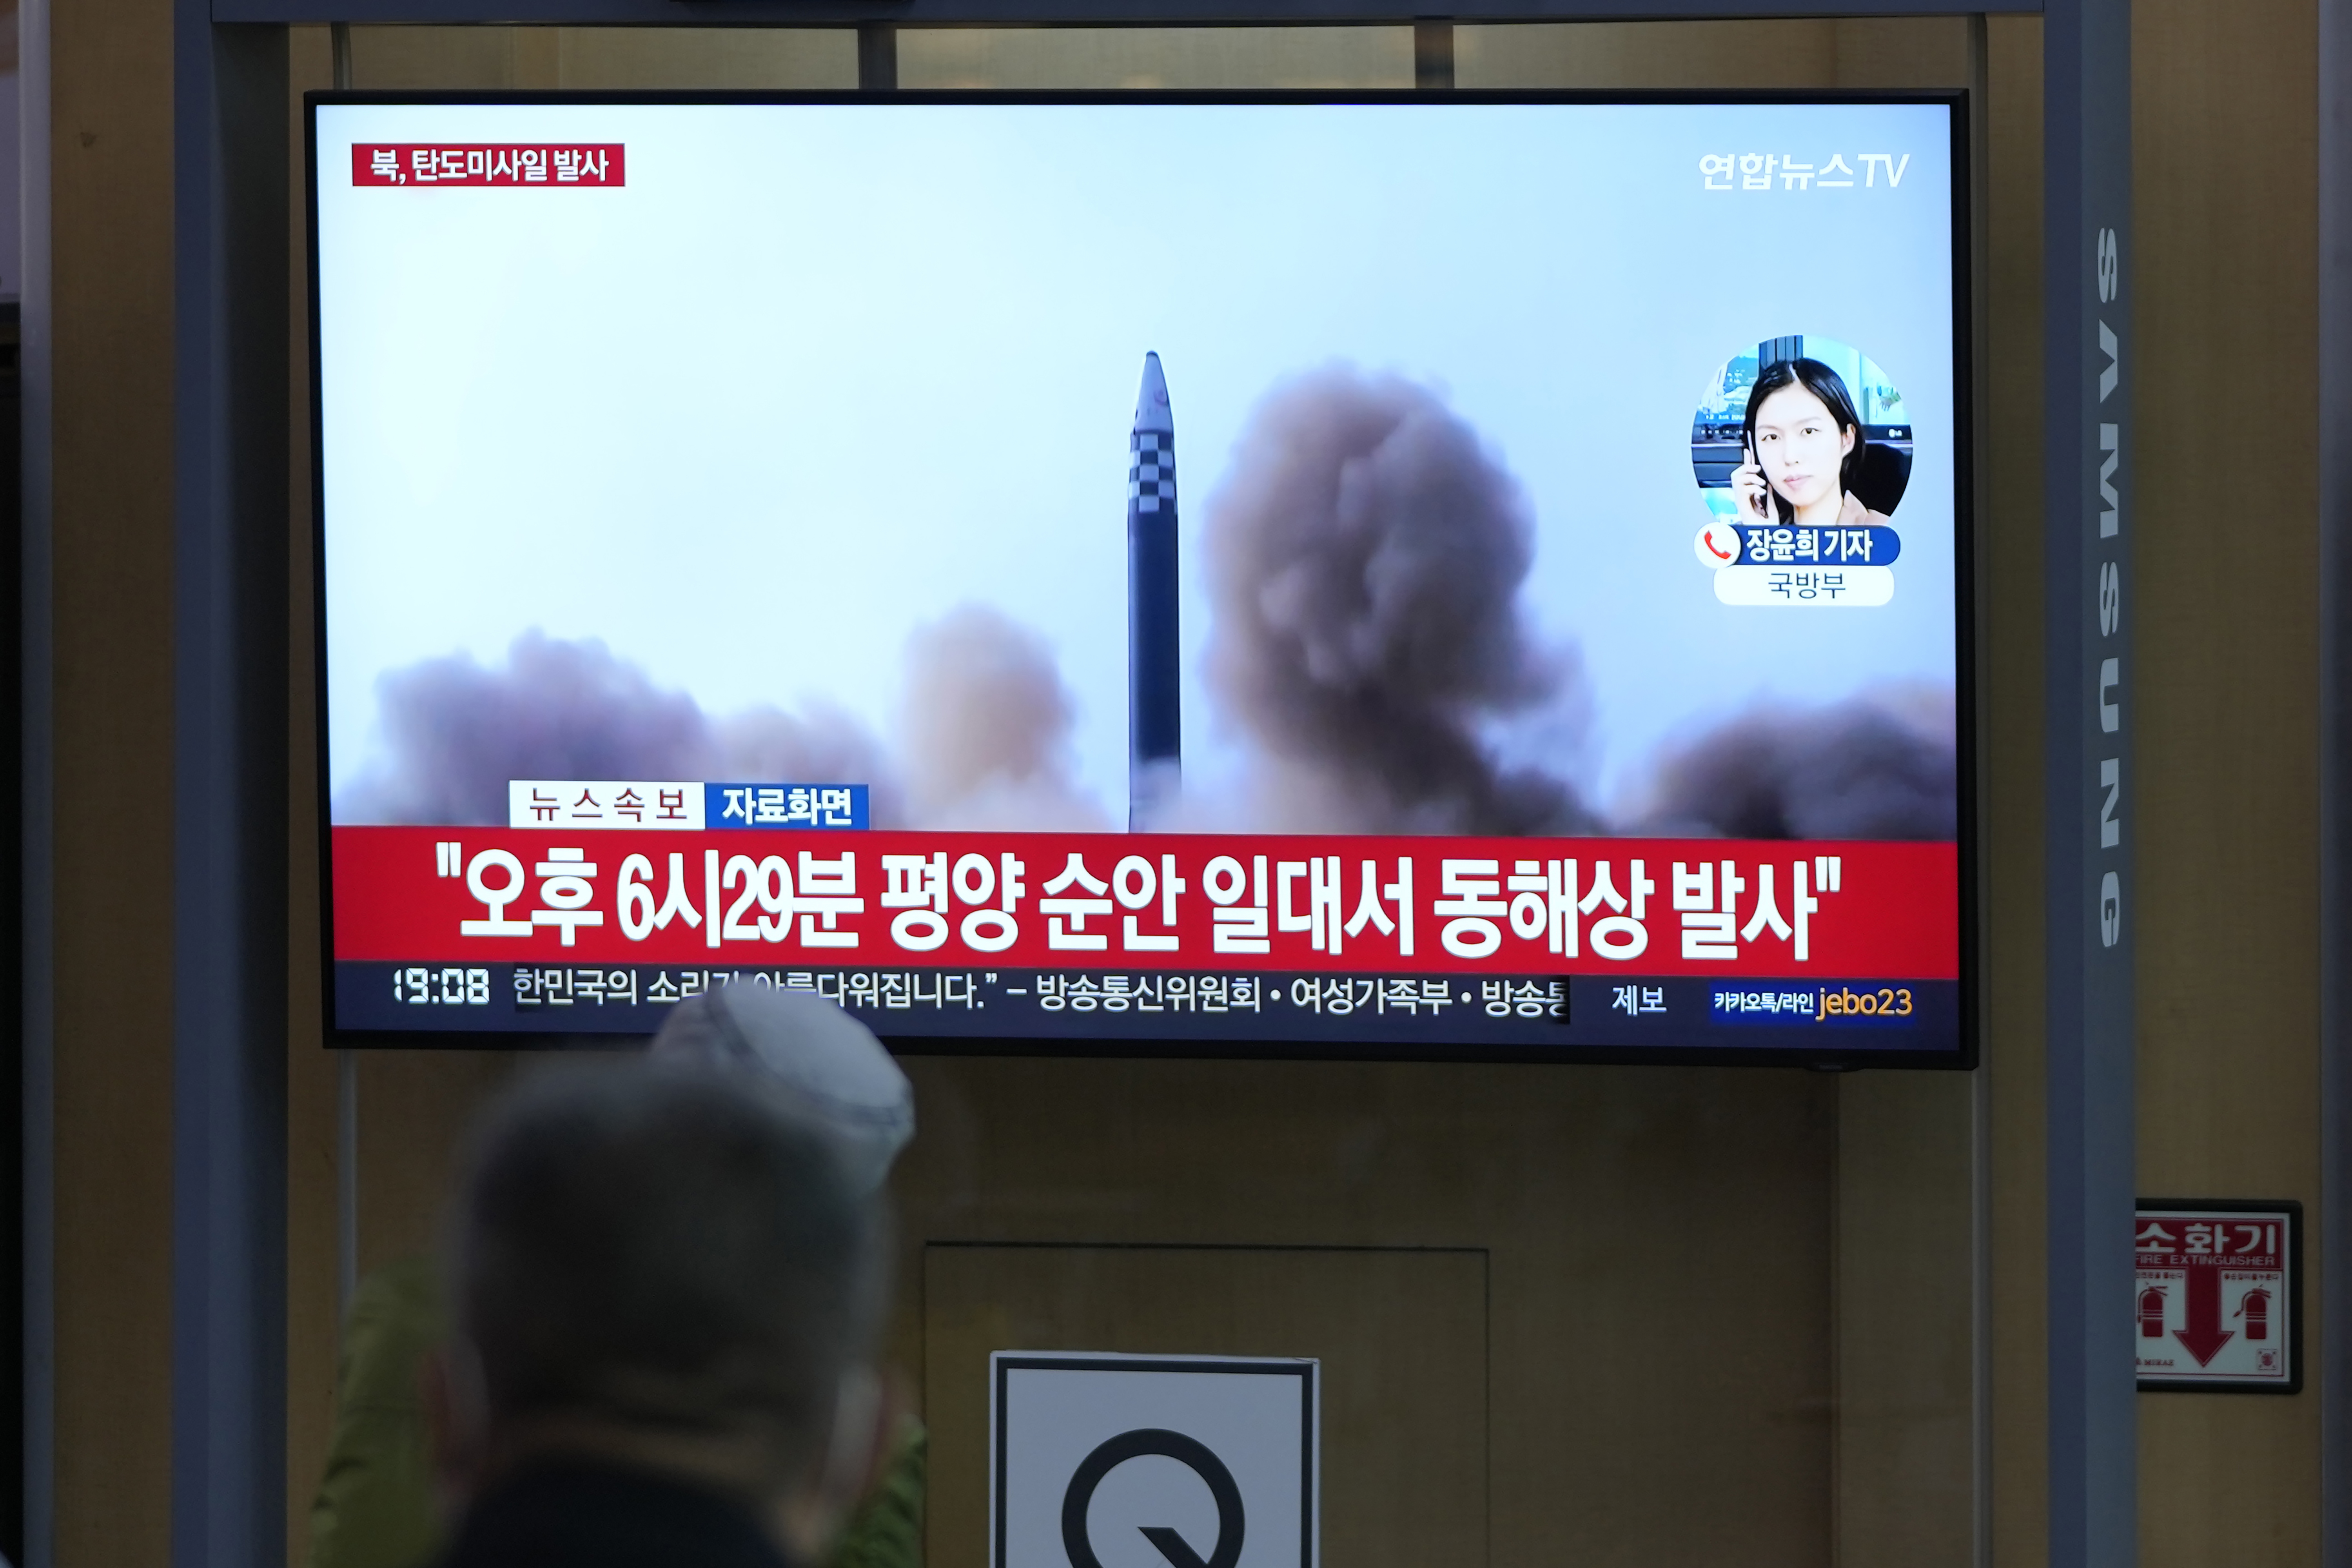 North Korea fires unidentified ballistic missile ahead of visit from U.S. Kamala Harris